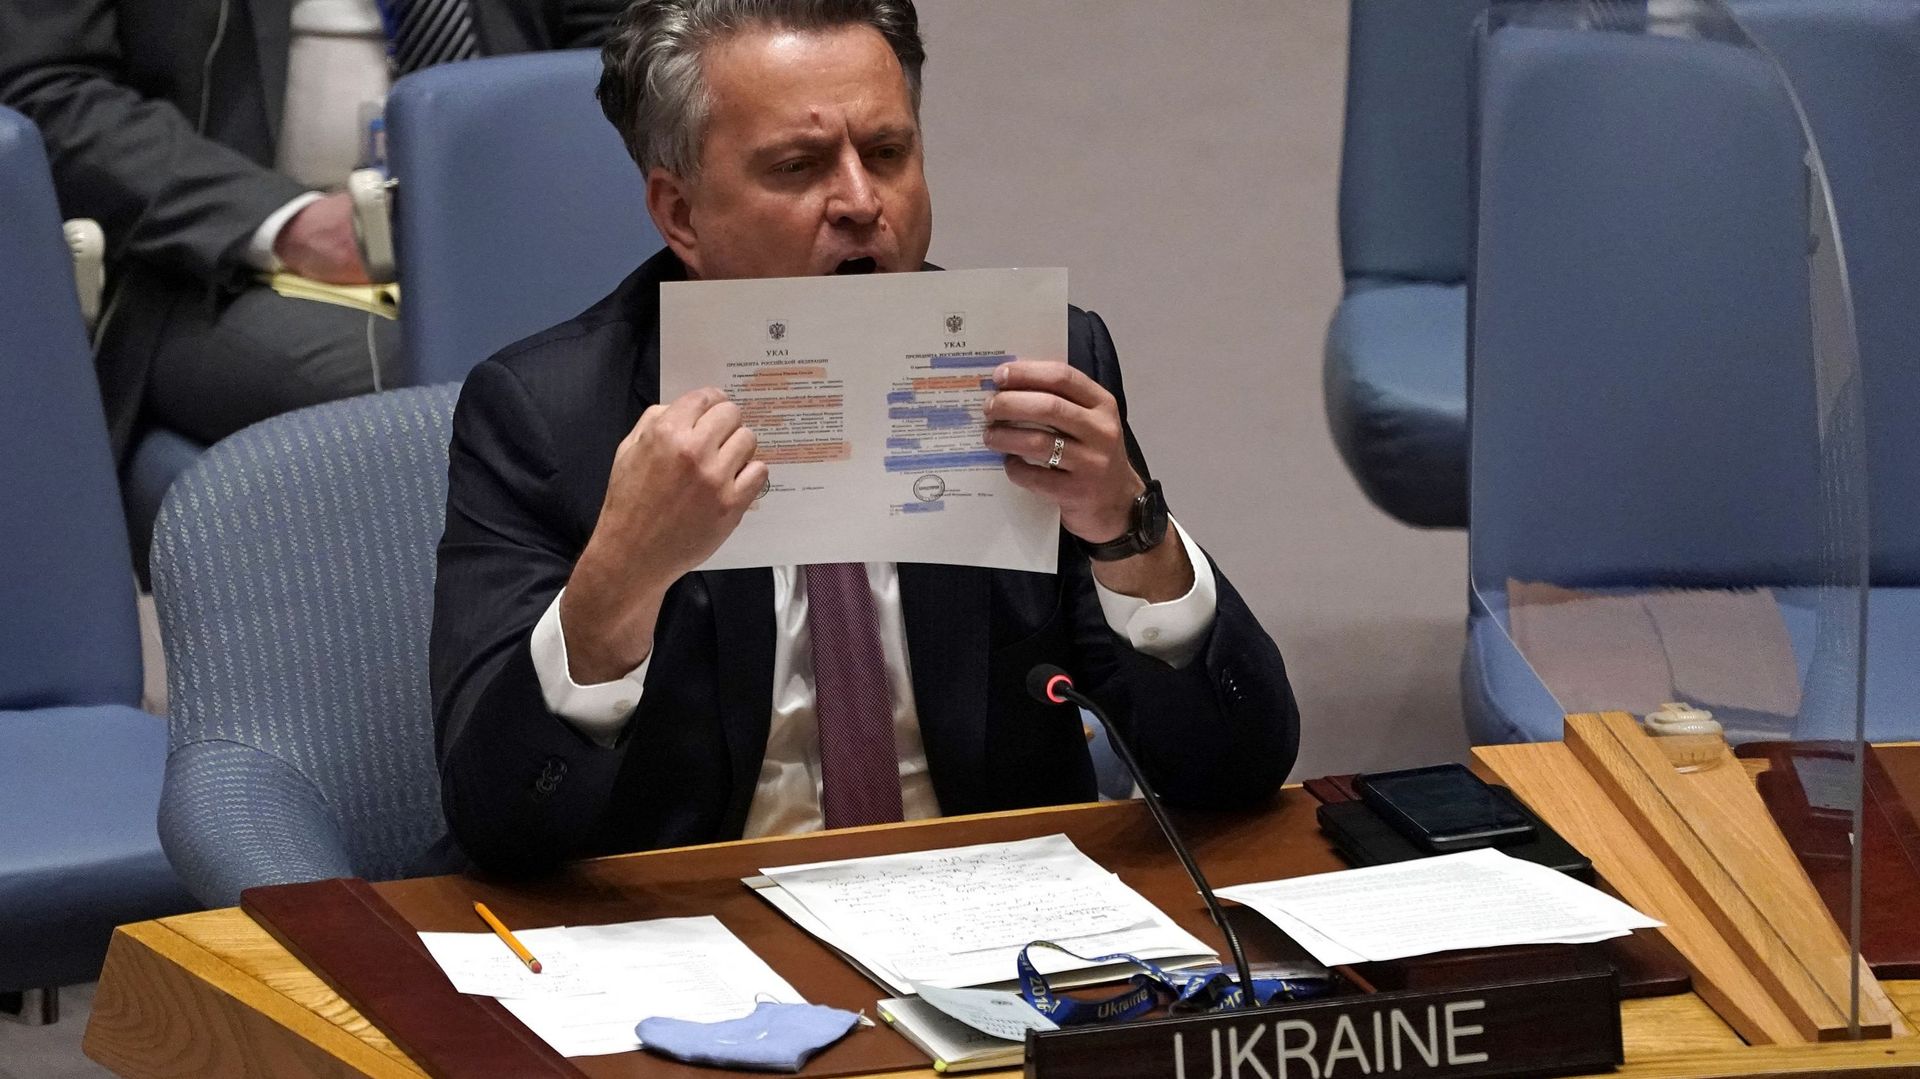 Le représentant permanent de l’Ukraine auprès des Nations unies, Sergiy Kyslytsya, prend la parole lors d’une réunion d’urgence du Conseil de sécurité de l’ONU sur la crise ukrainienne, à New York, le 21 février 2022.